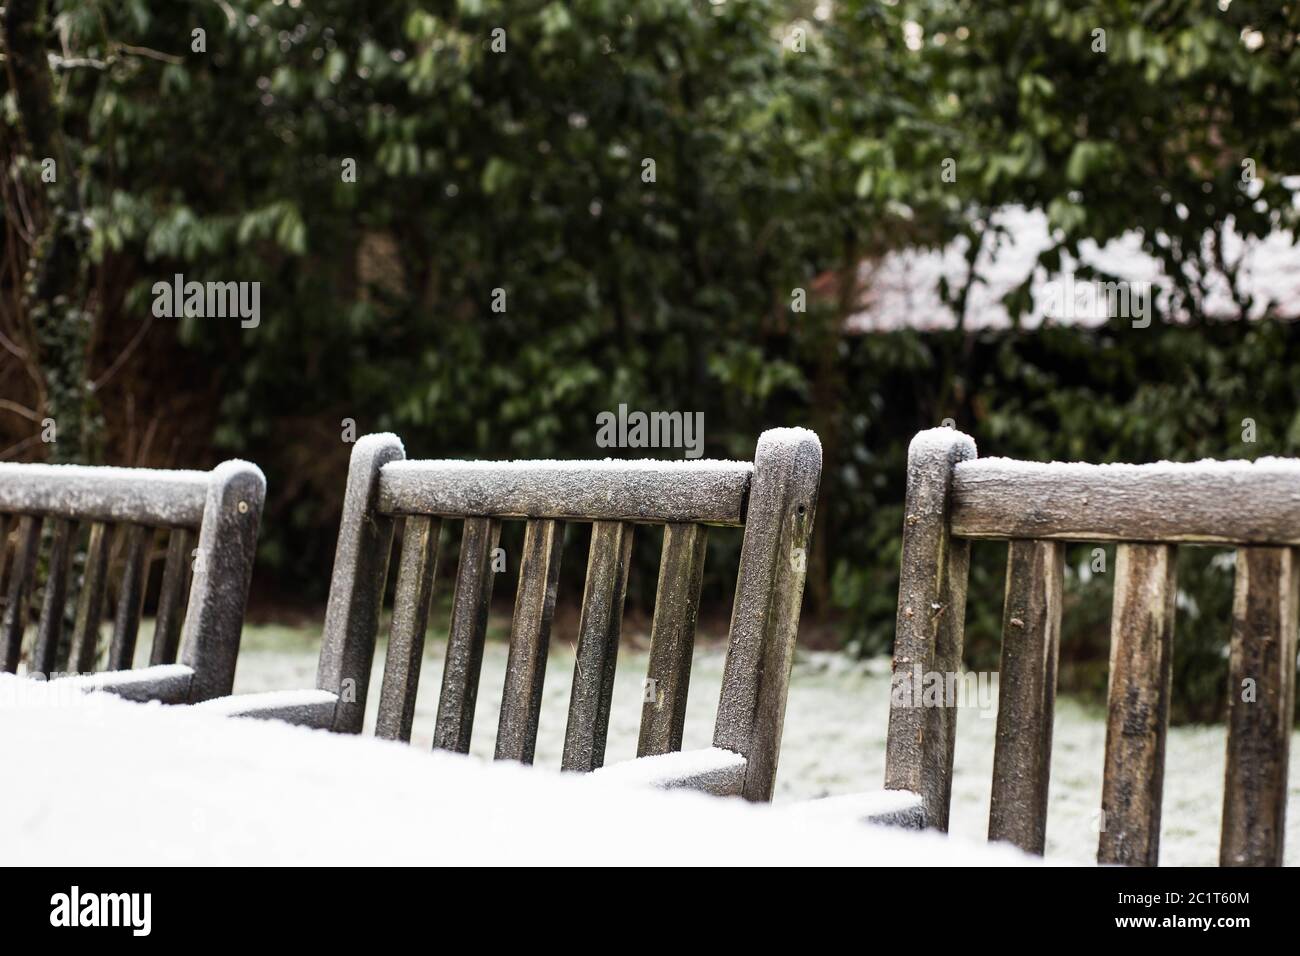 Chaises de jardin confortable en bois recouvert de neige dans un jardin. Banque D'Images